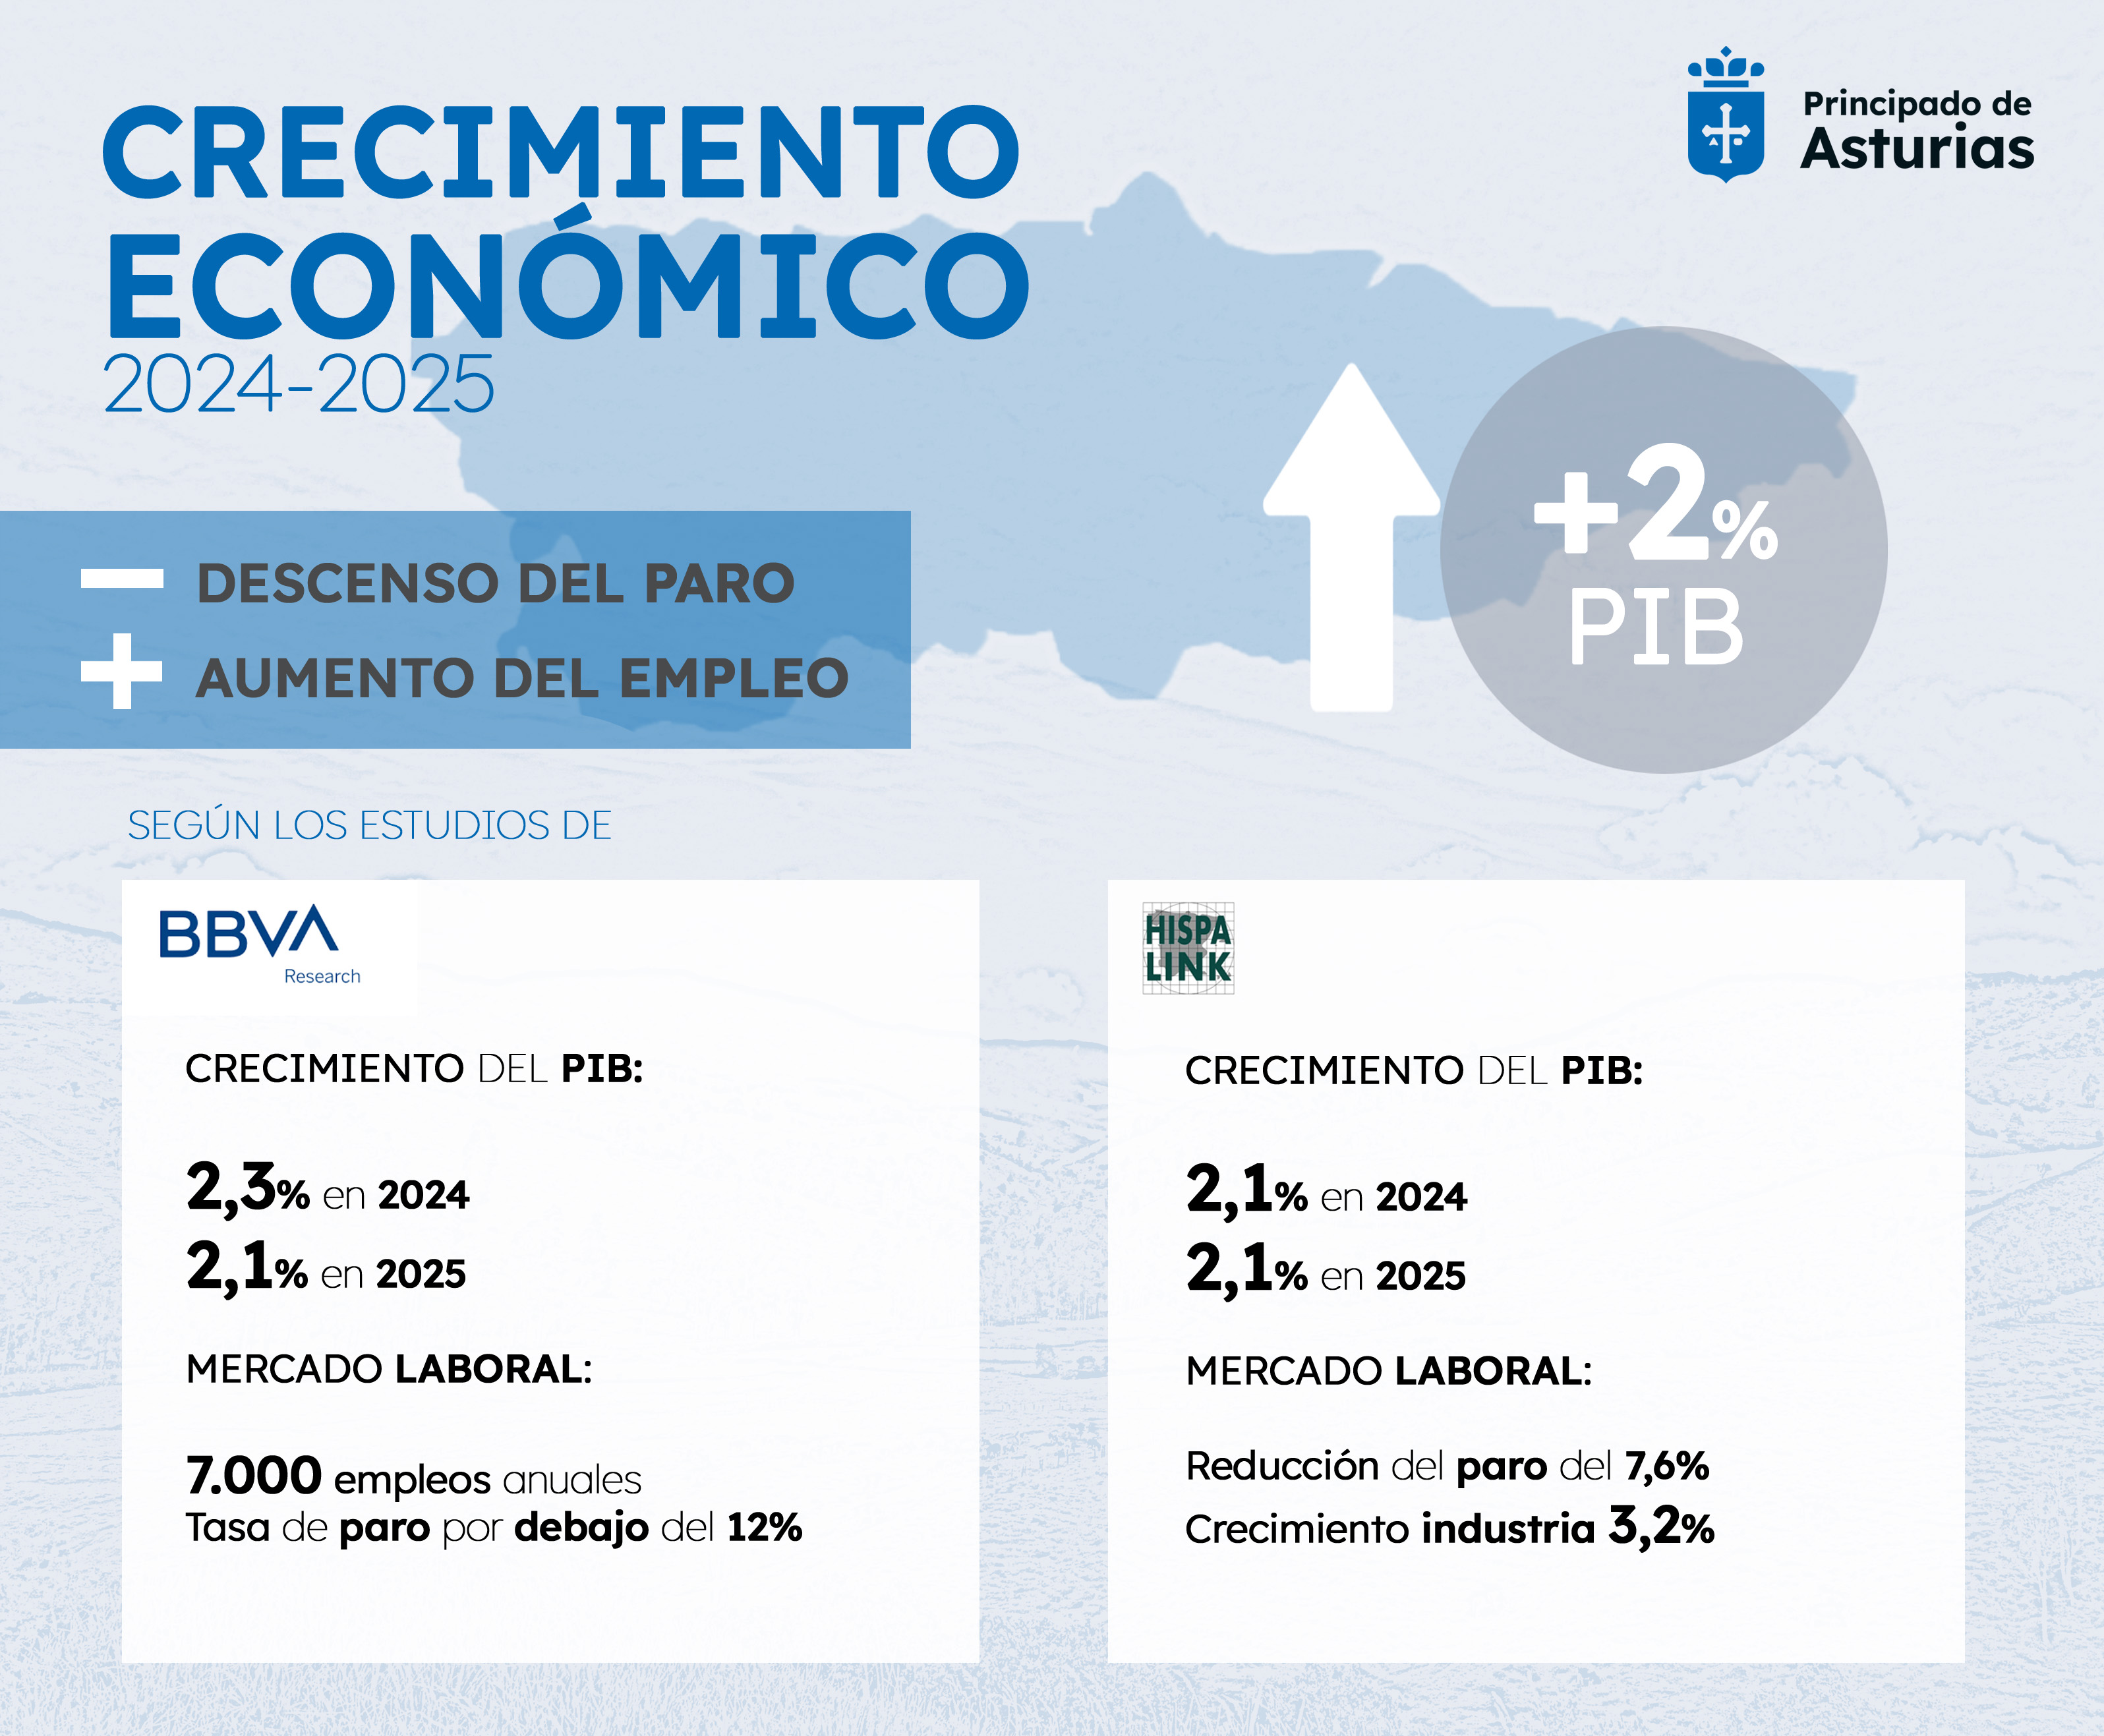 Imagen - La economía asturiana crecerá con robustez este año y el que viene gracias al gasto de los hogares y el tirón del turismo y la industria